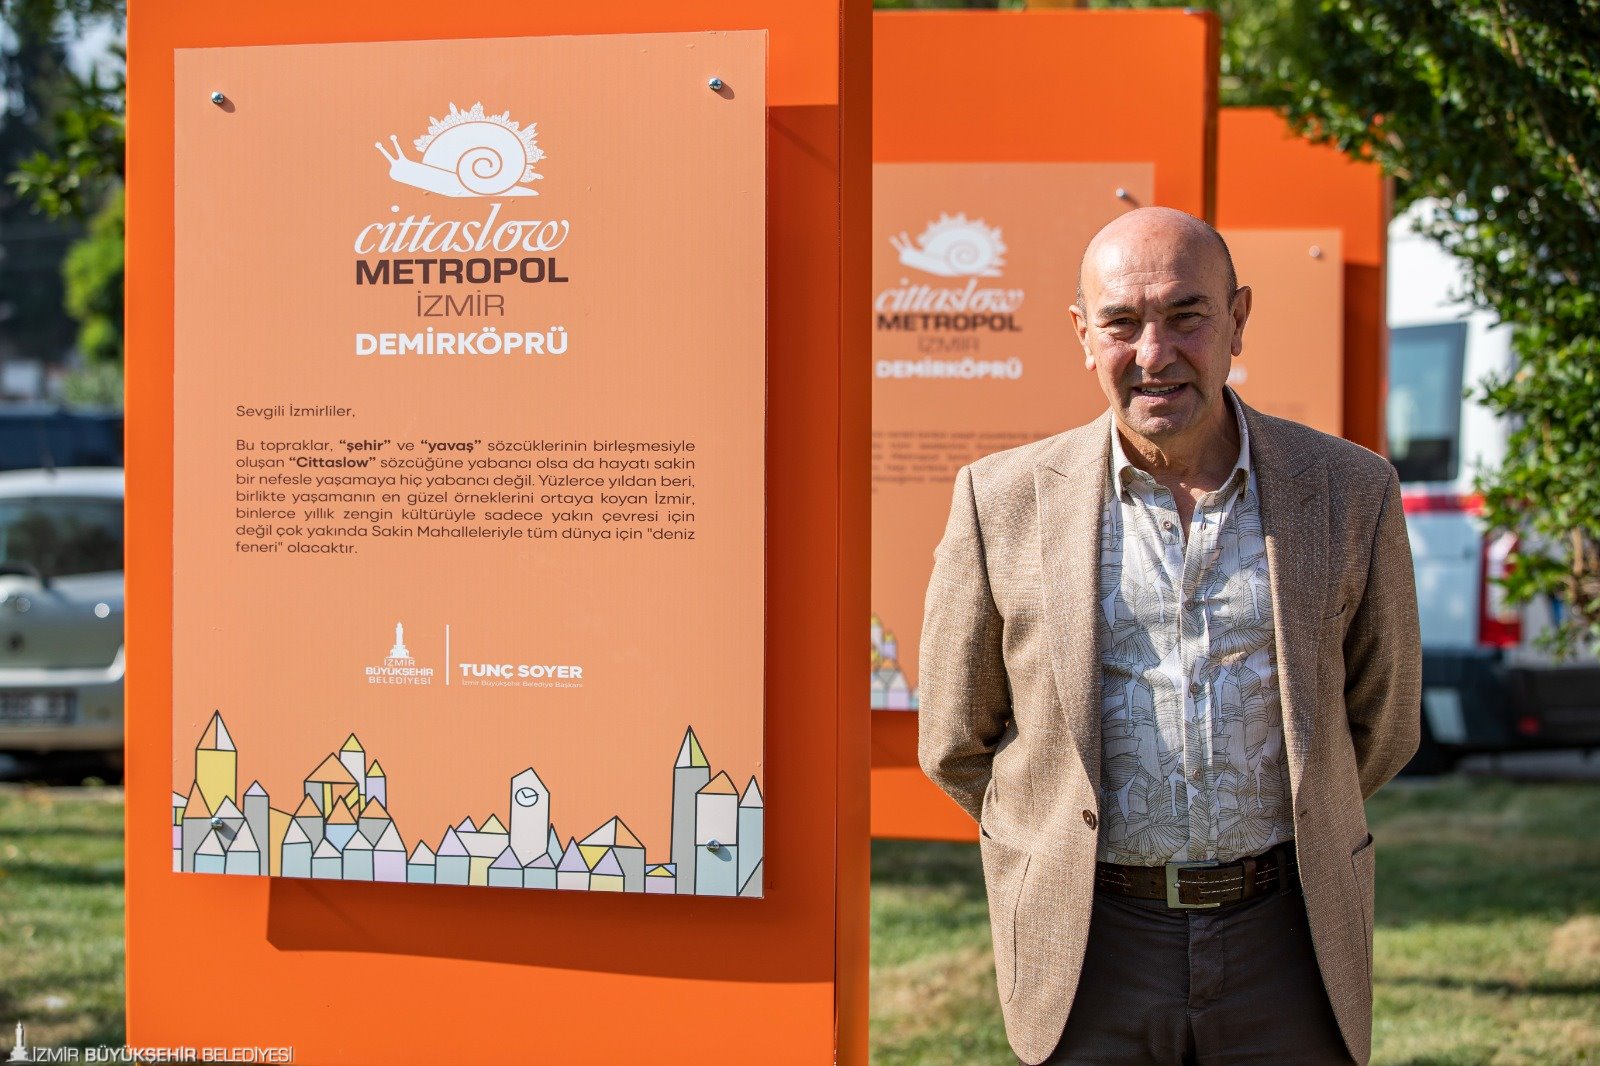 Cittaslow Metropol Sakin Mahalle programı 5 ödülü İzmir’e getirdi